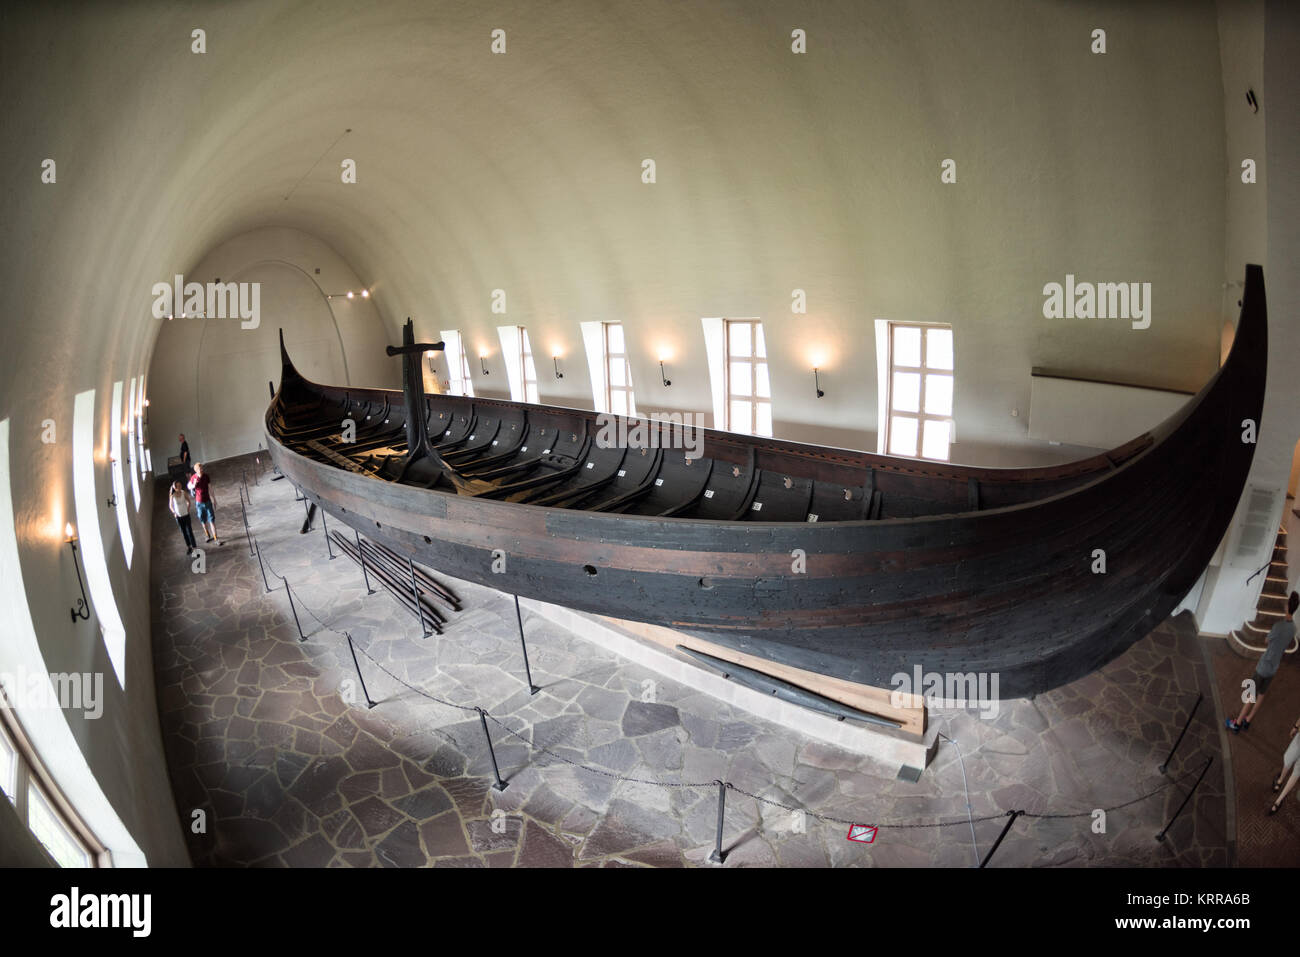 OSLO, Norvegia - La Nave Gokstad è la più grande delle navi vichinghe in  mostra presso il Museo delle Navi Vichinghe a Oslo, Norvegia. Esso è  chiamato dopo l'azienda sulla quale è